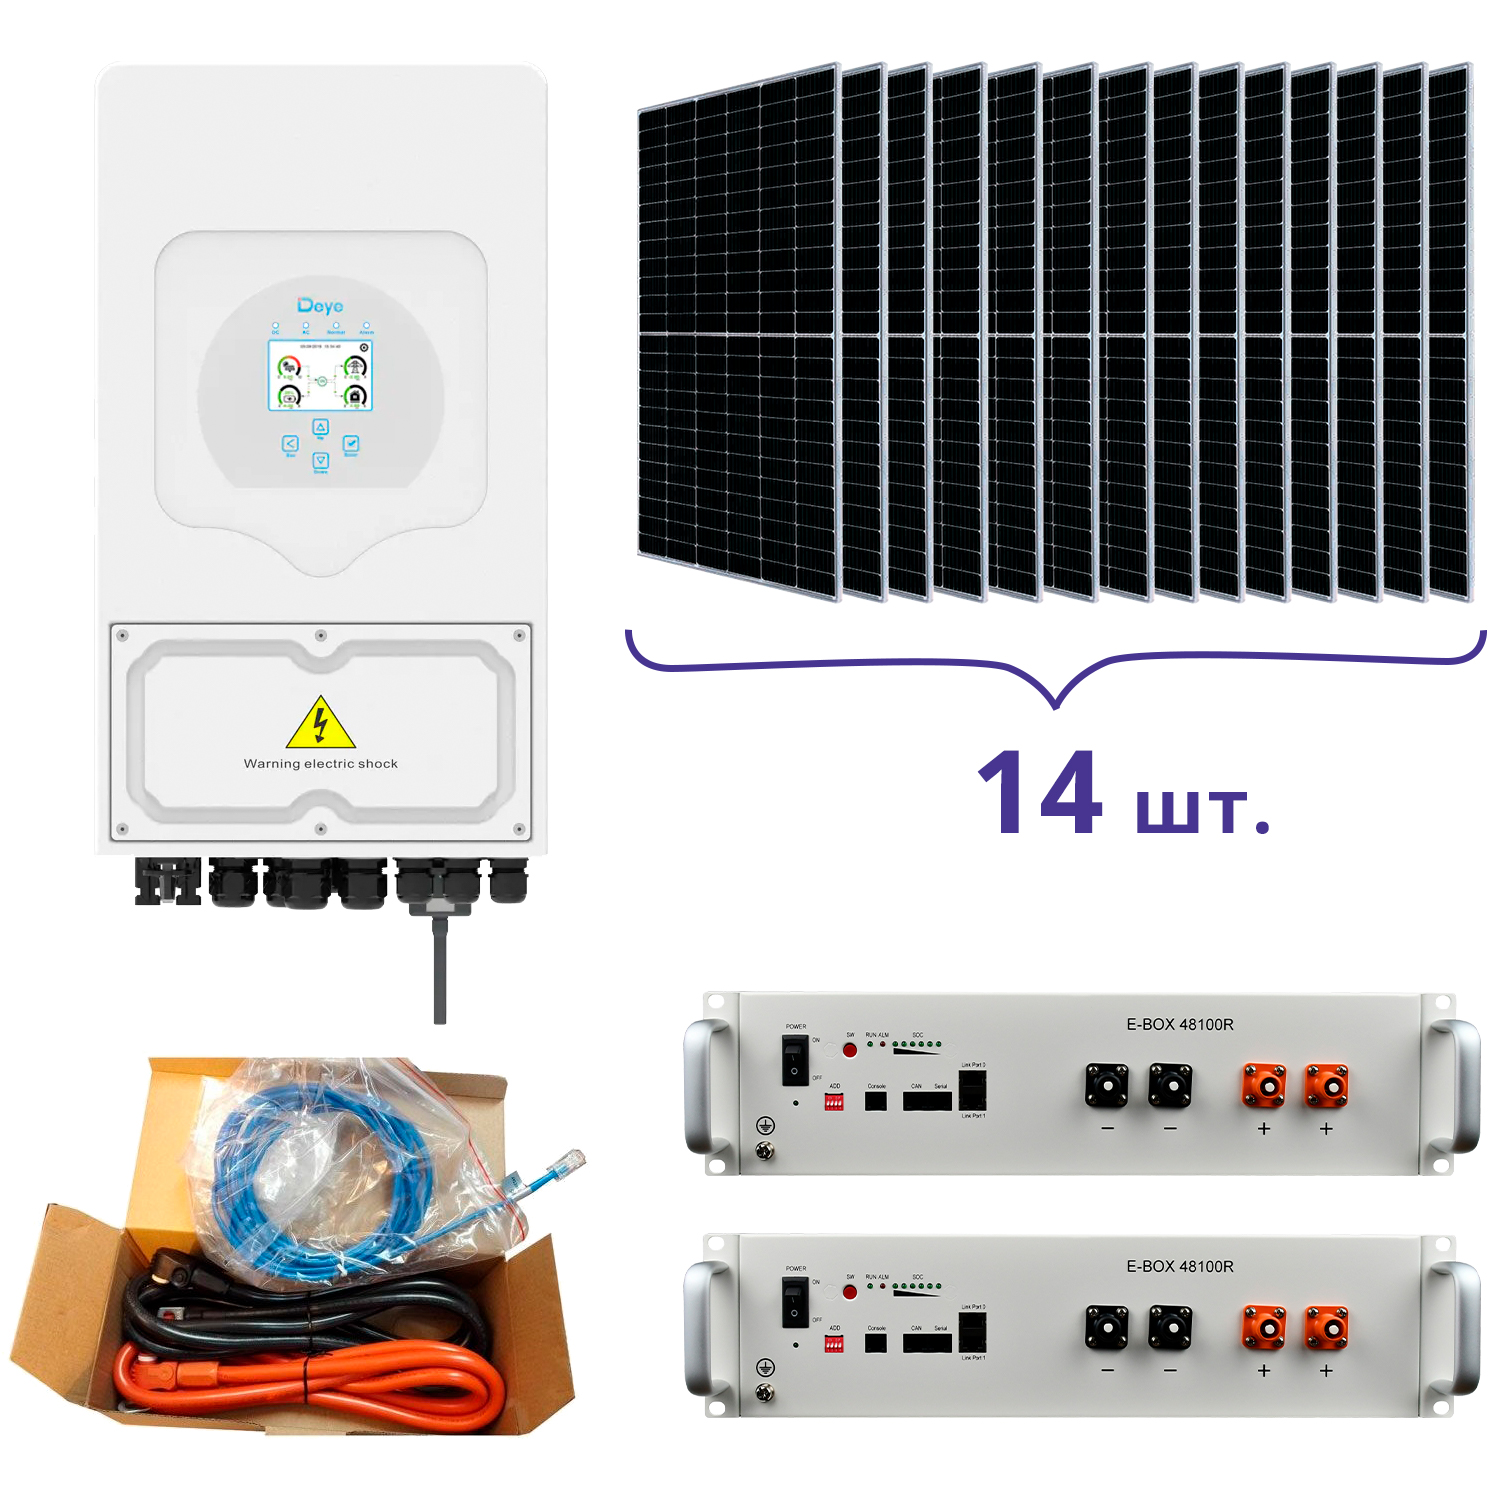 Инструкция система резервного питания Deye SUN-5K-SG03LP1-EU+Pytes E-BOX-48100R-2шт.+Battery Cable Kit-1шт.+JA Solar JAM72S20-460/MR 460 Wp, Mono-14шт.+кабель